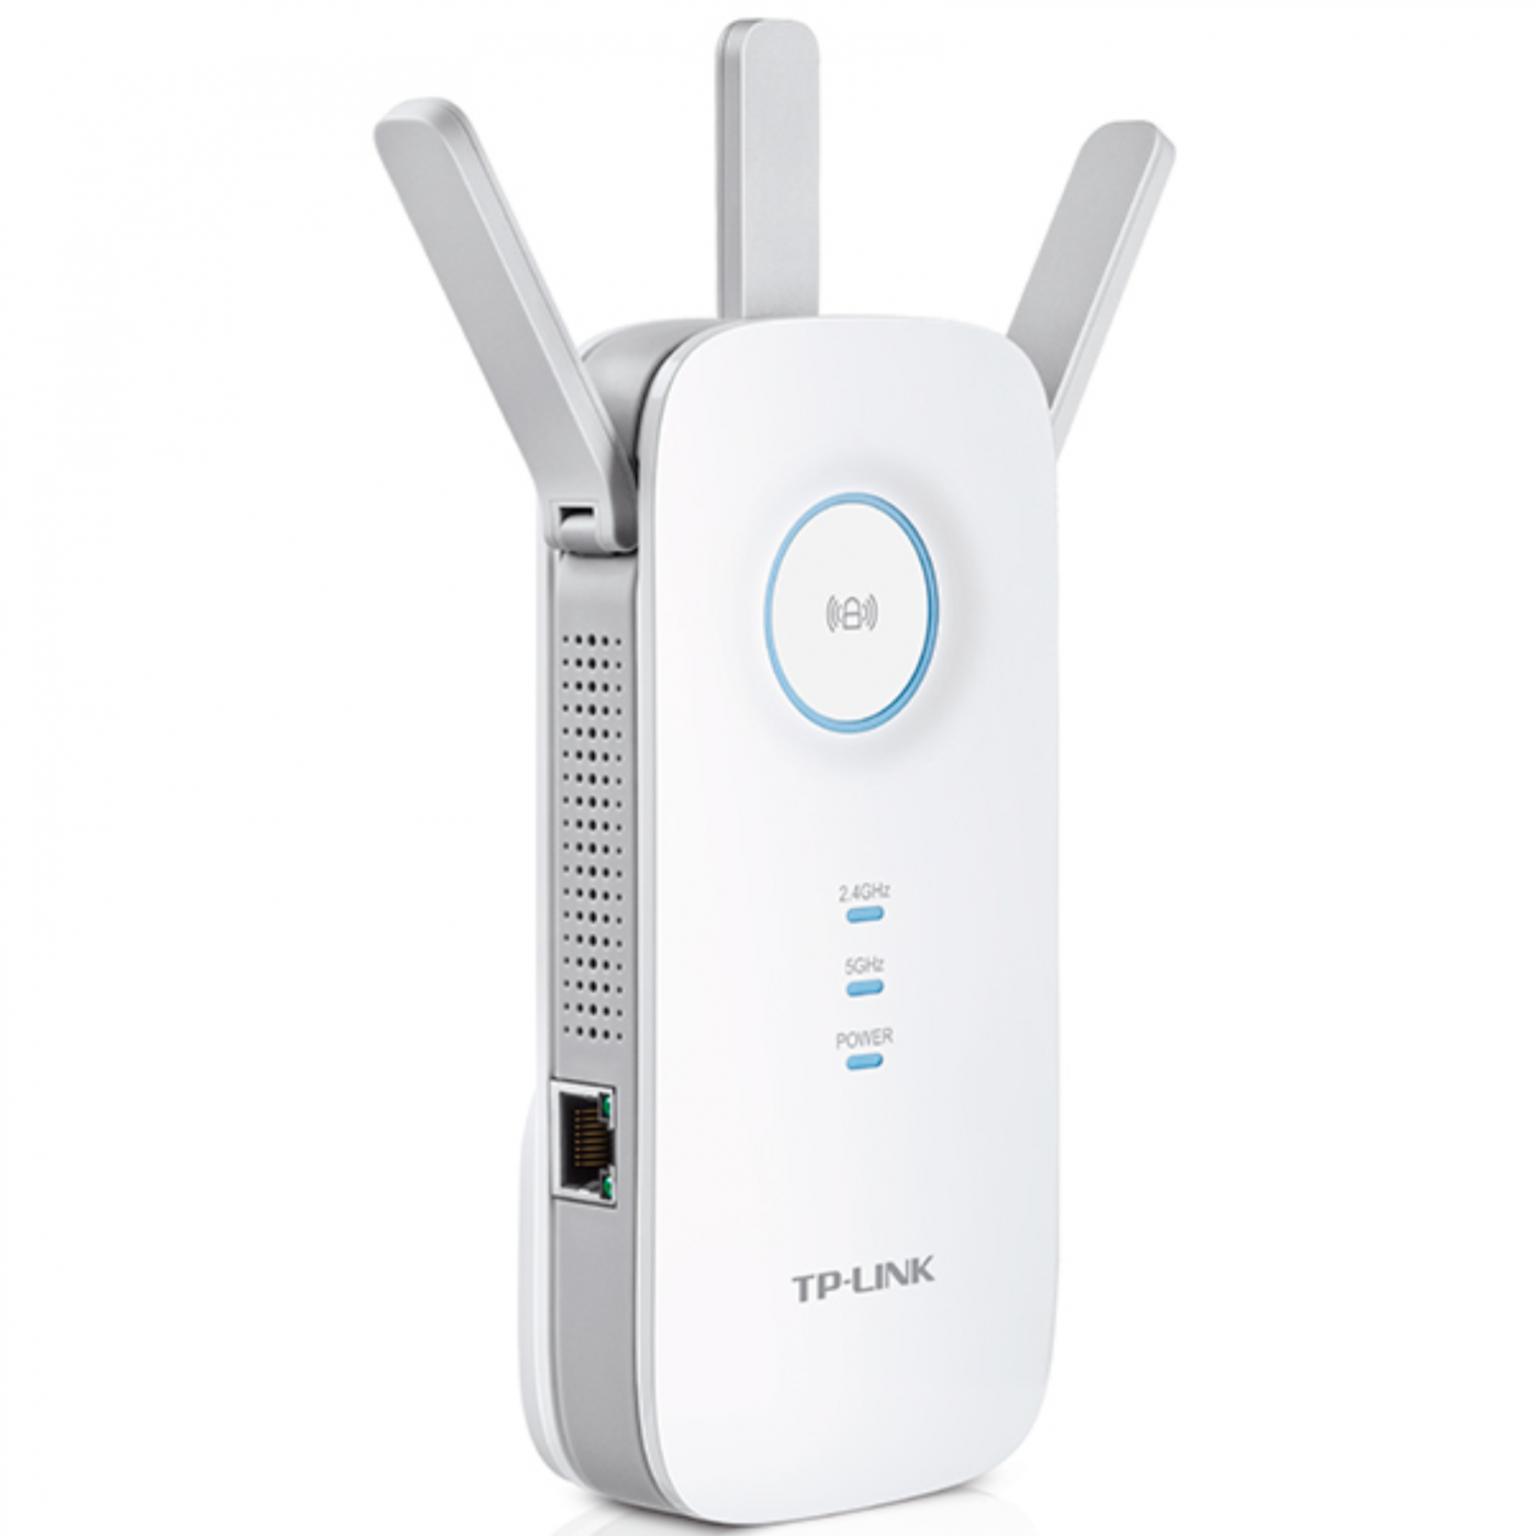 Draadloze WiFi - Draadloze WiFi Versterker, Merk: TP-Link - RE450, Extra: Dual band, Functie: Repeater, Aantal poorten: 1, Frequentieband: 2.4 / 5 GHz, Snelheid 2.4 Tot 450 Mbps, 5 GHz: Tot 1300 Mbps.